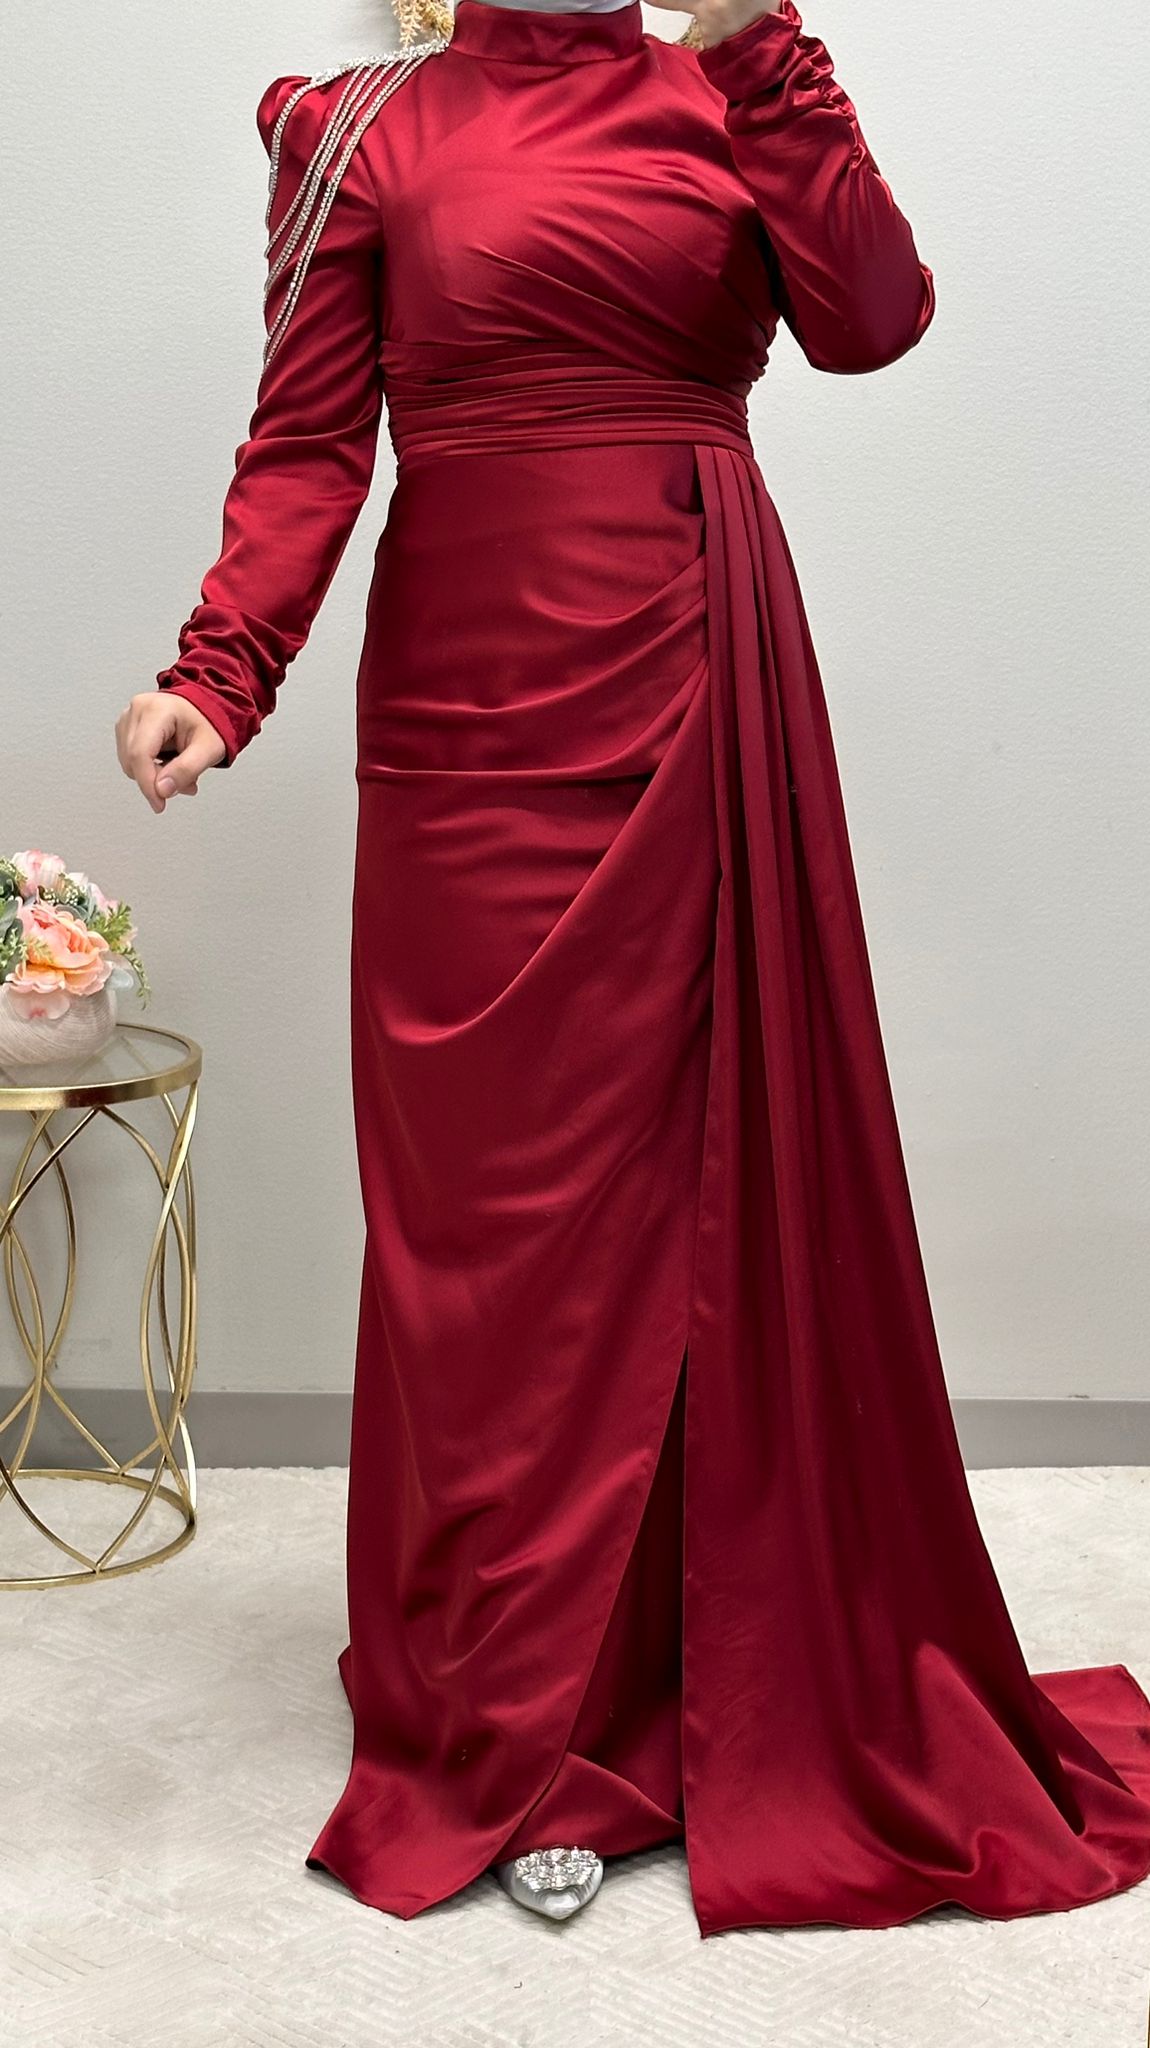 فستان رسمي أحمر مزين بدقة بسلاسل تتدلى على الكتف وطيات متداخلة مصنوعة بدقة. إنه مثال للفخامة، فهو يعرض ثنية جانبية أنيقة، بينما تضفي الأكمام المنتفخة سحرًا ملكيًا.